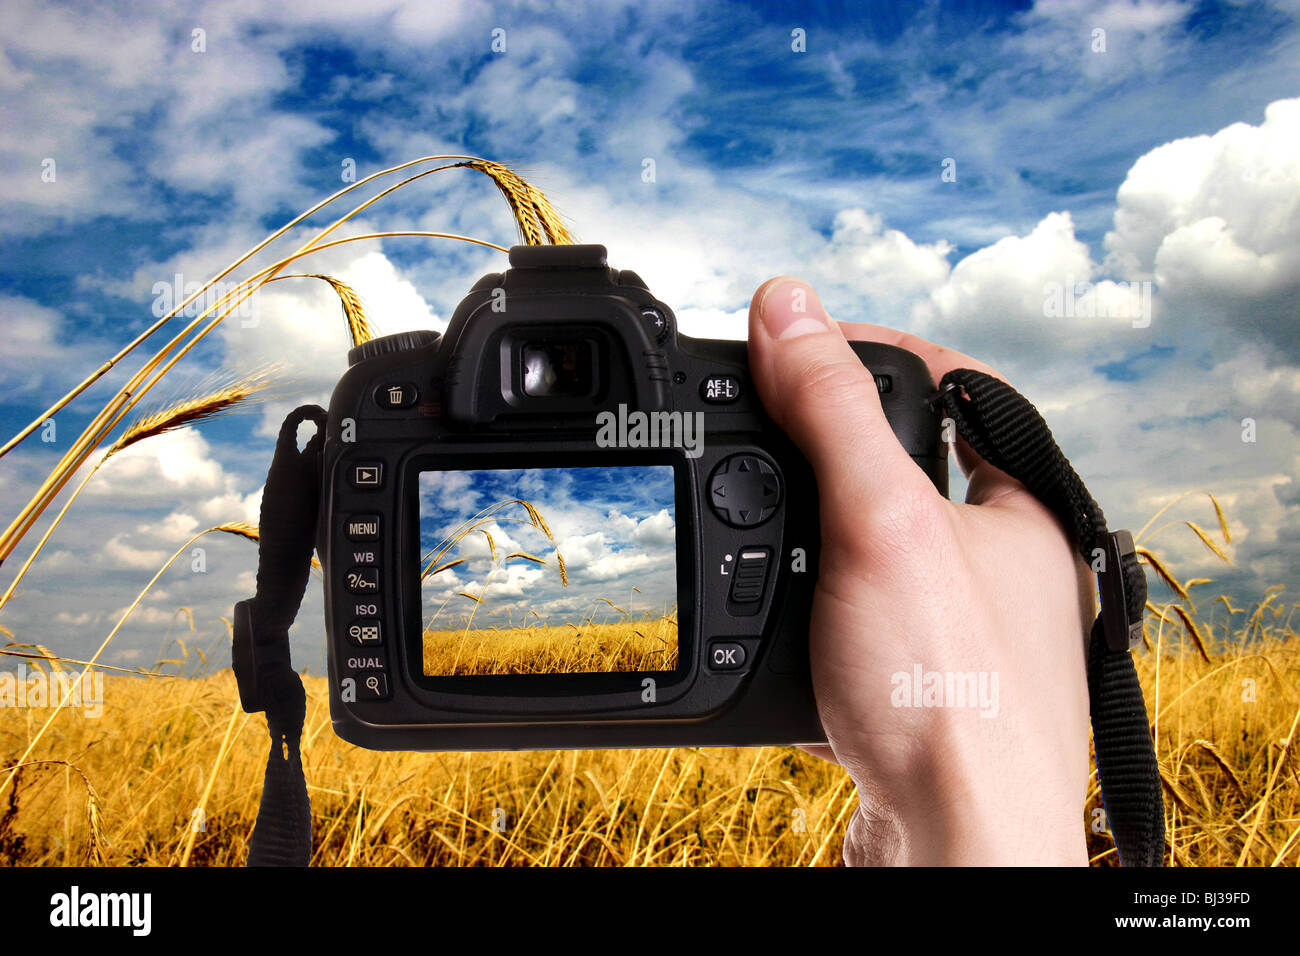 L'homme de prendre une photographie de paysage avec un appareil photo numérique Banque D'Images